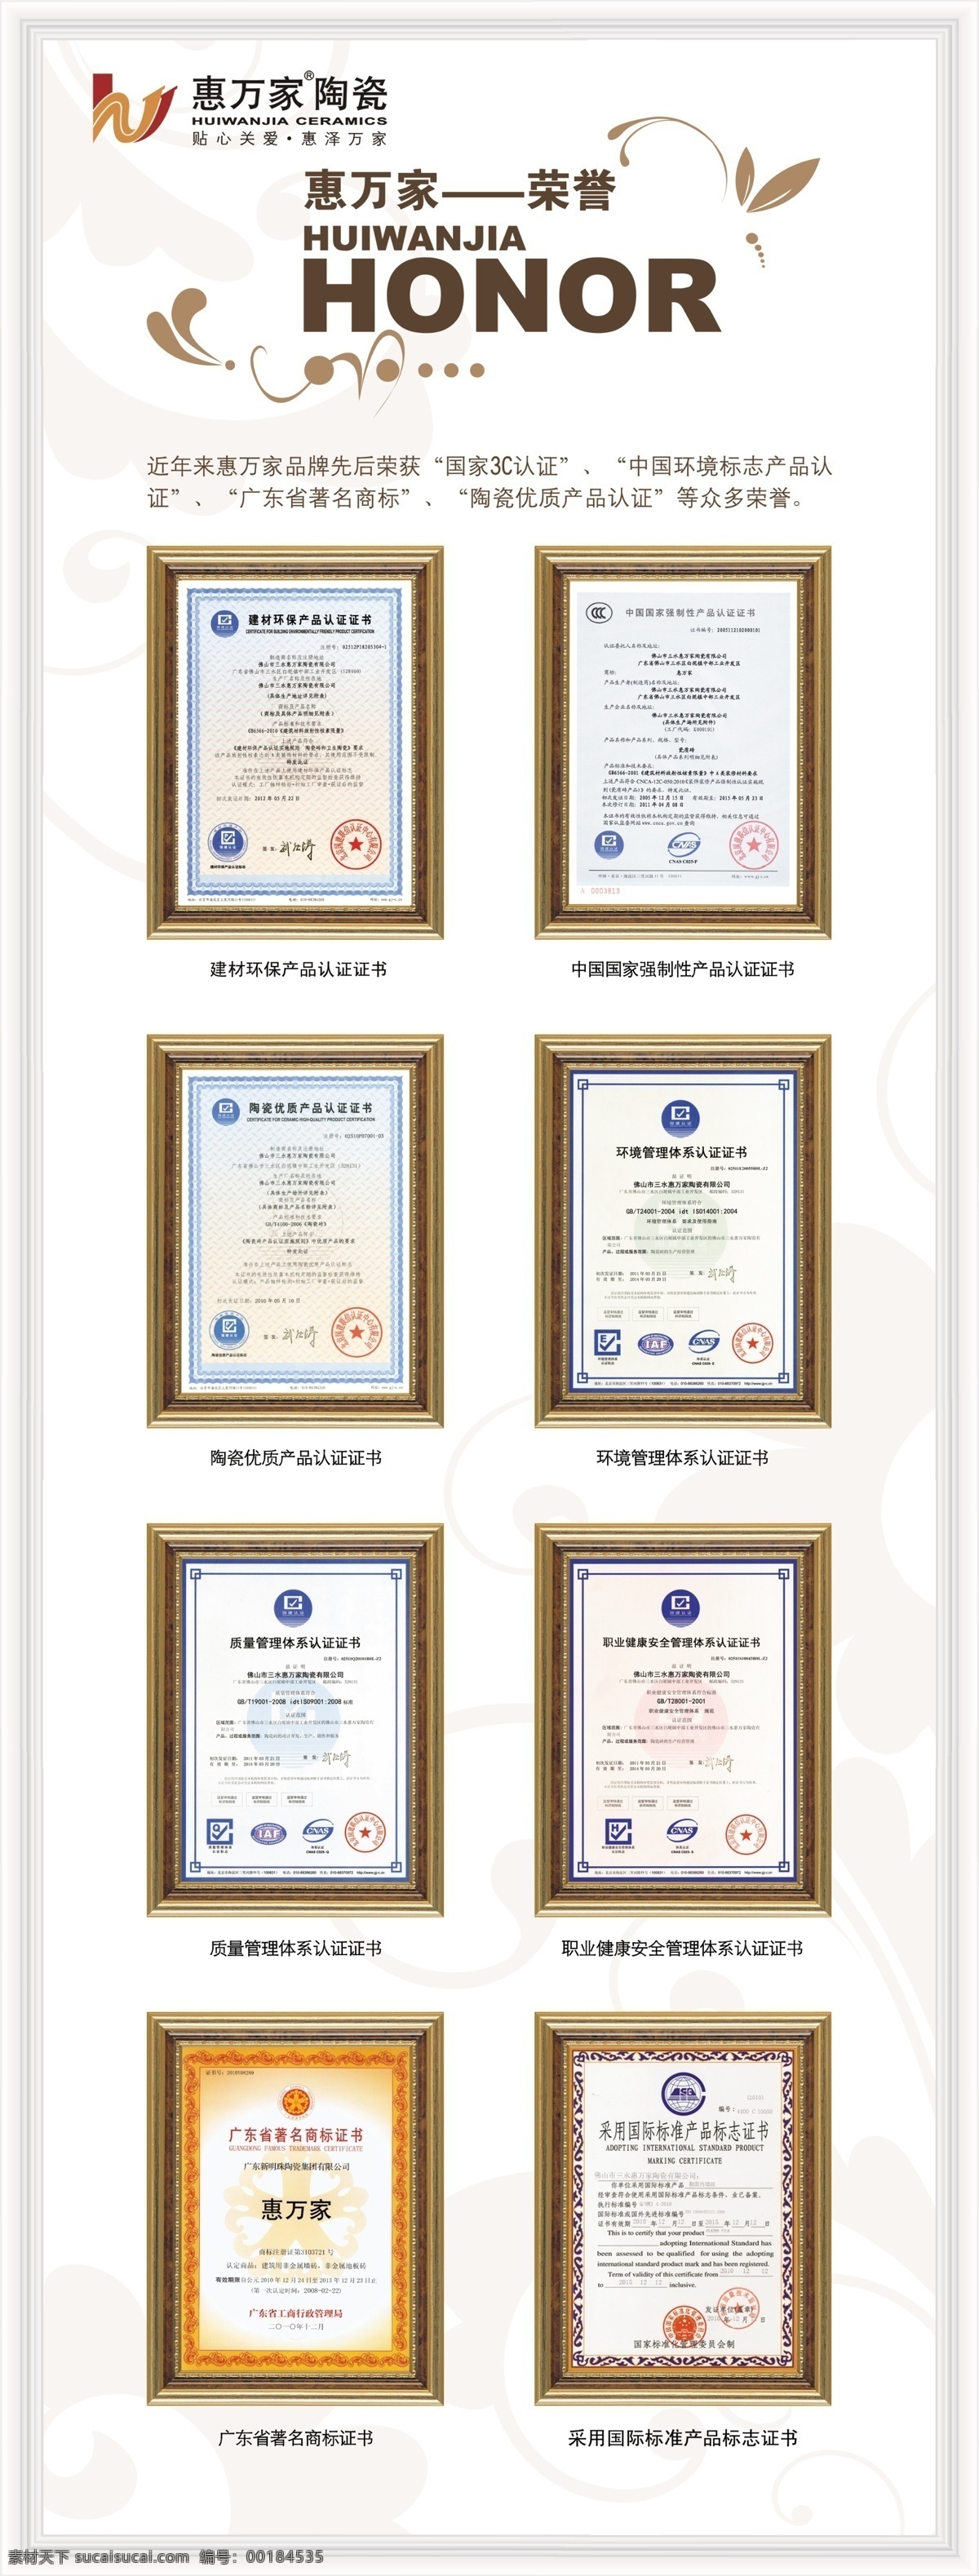 惠 万家 企业荣誉 logo 惠万家陶瓷 展架 国家 3c 认证 证书 环境管理 体系认证 展板模板 广告设计模板 源文件